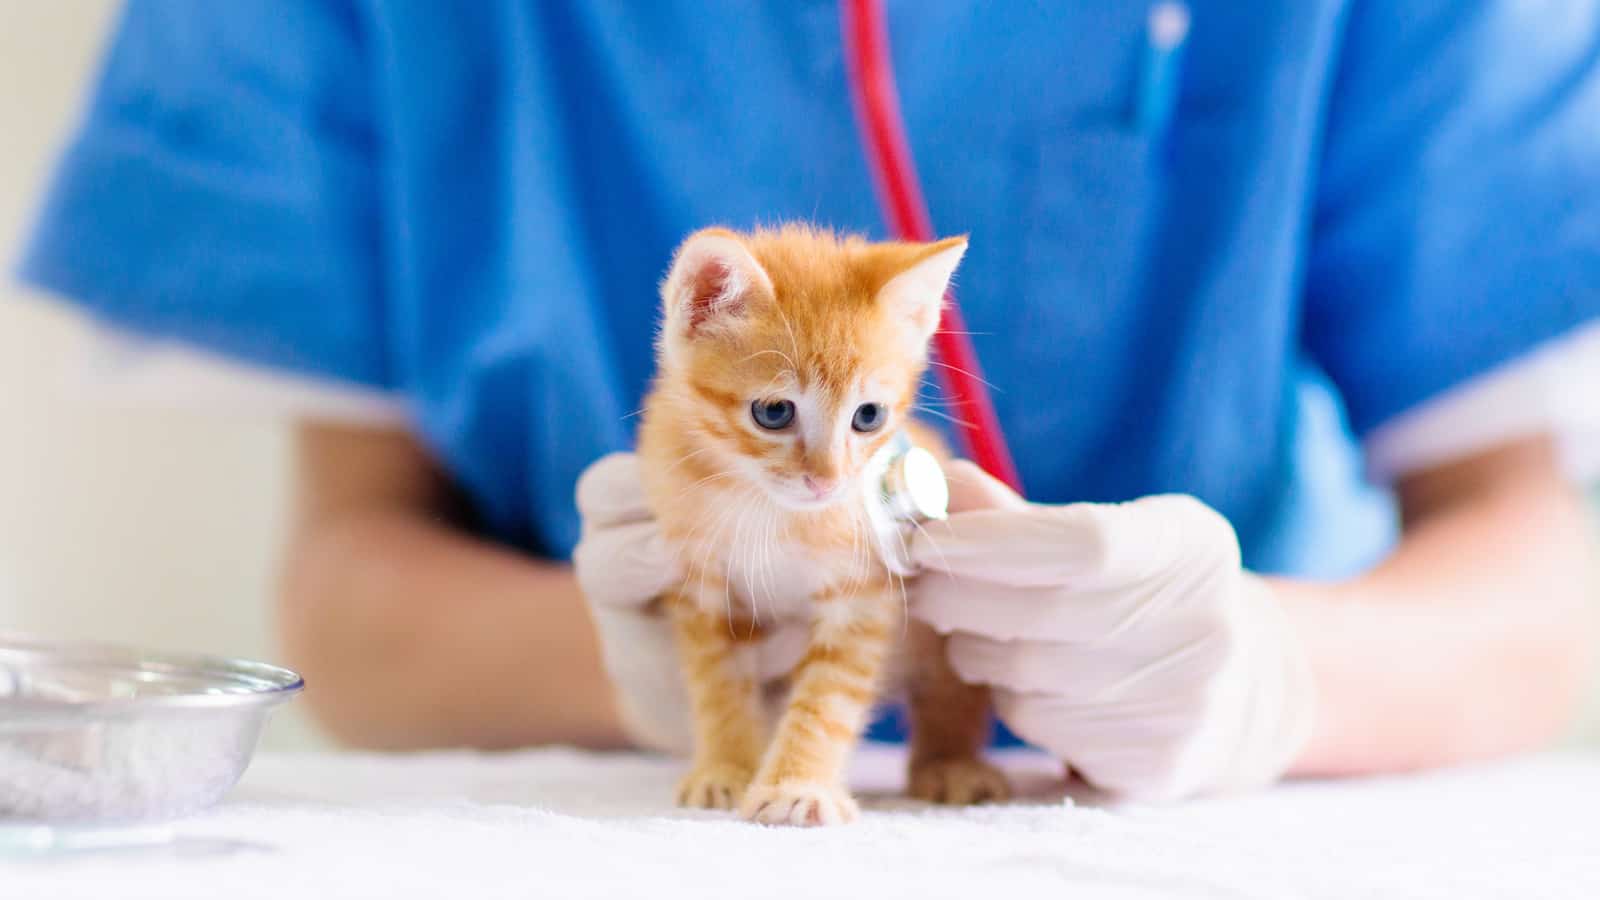 Kitten at veterinarian doctor.